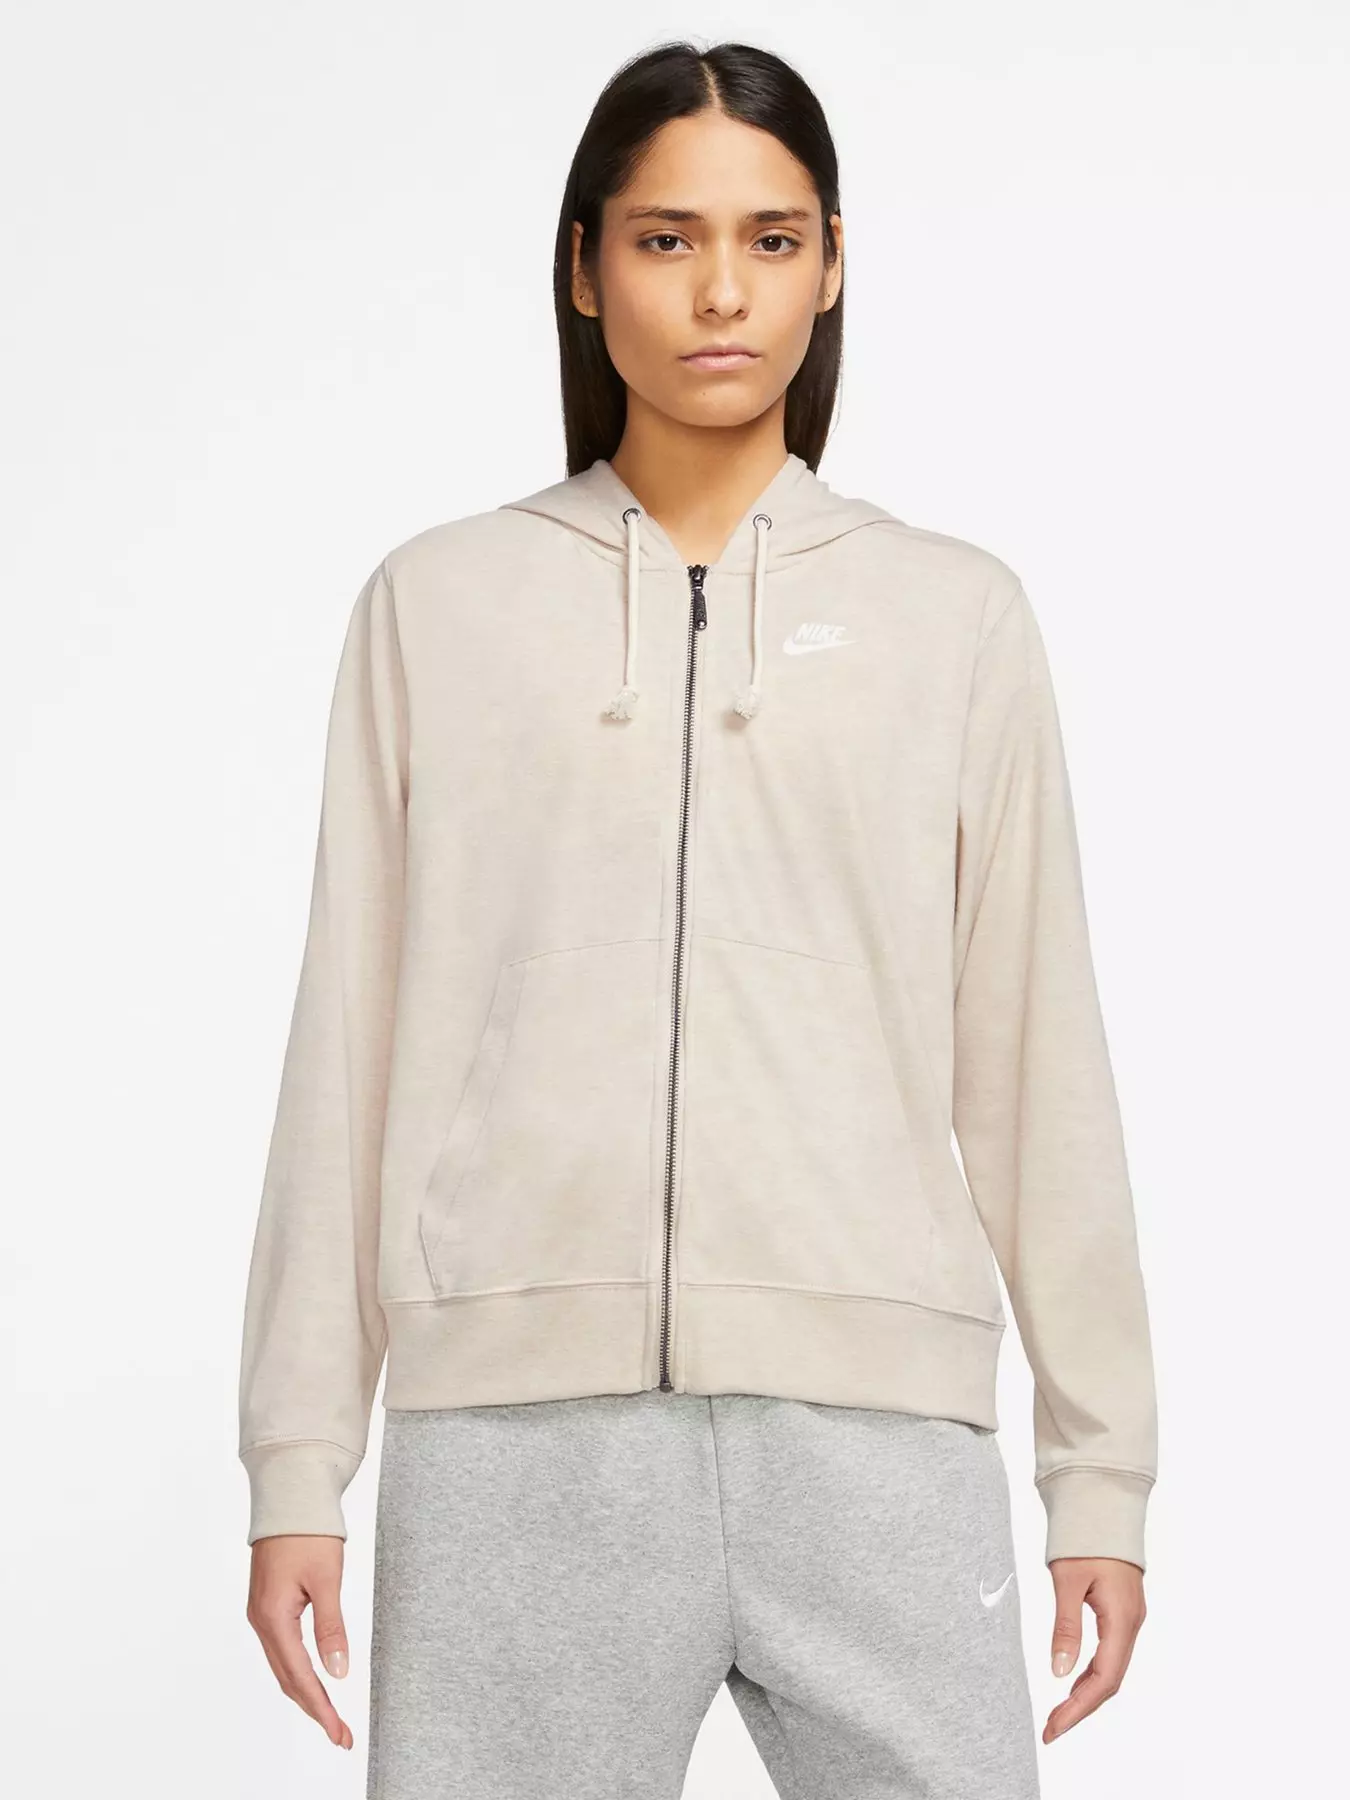 Nike Sportswear Club Fleece Women's Pullover Hoodie - Beige (Plus